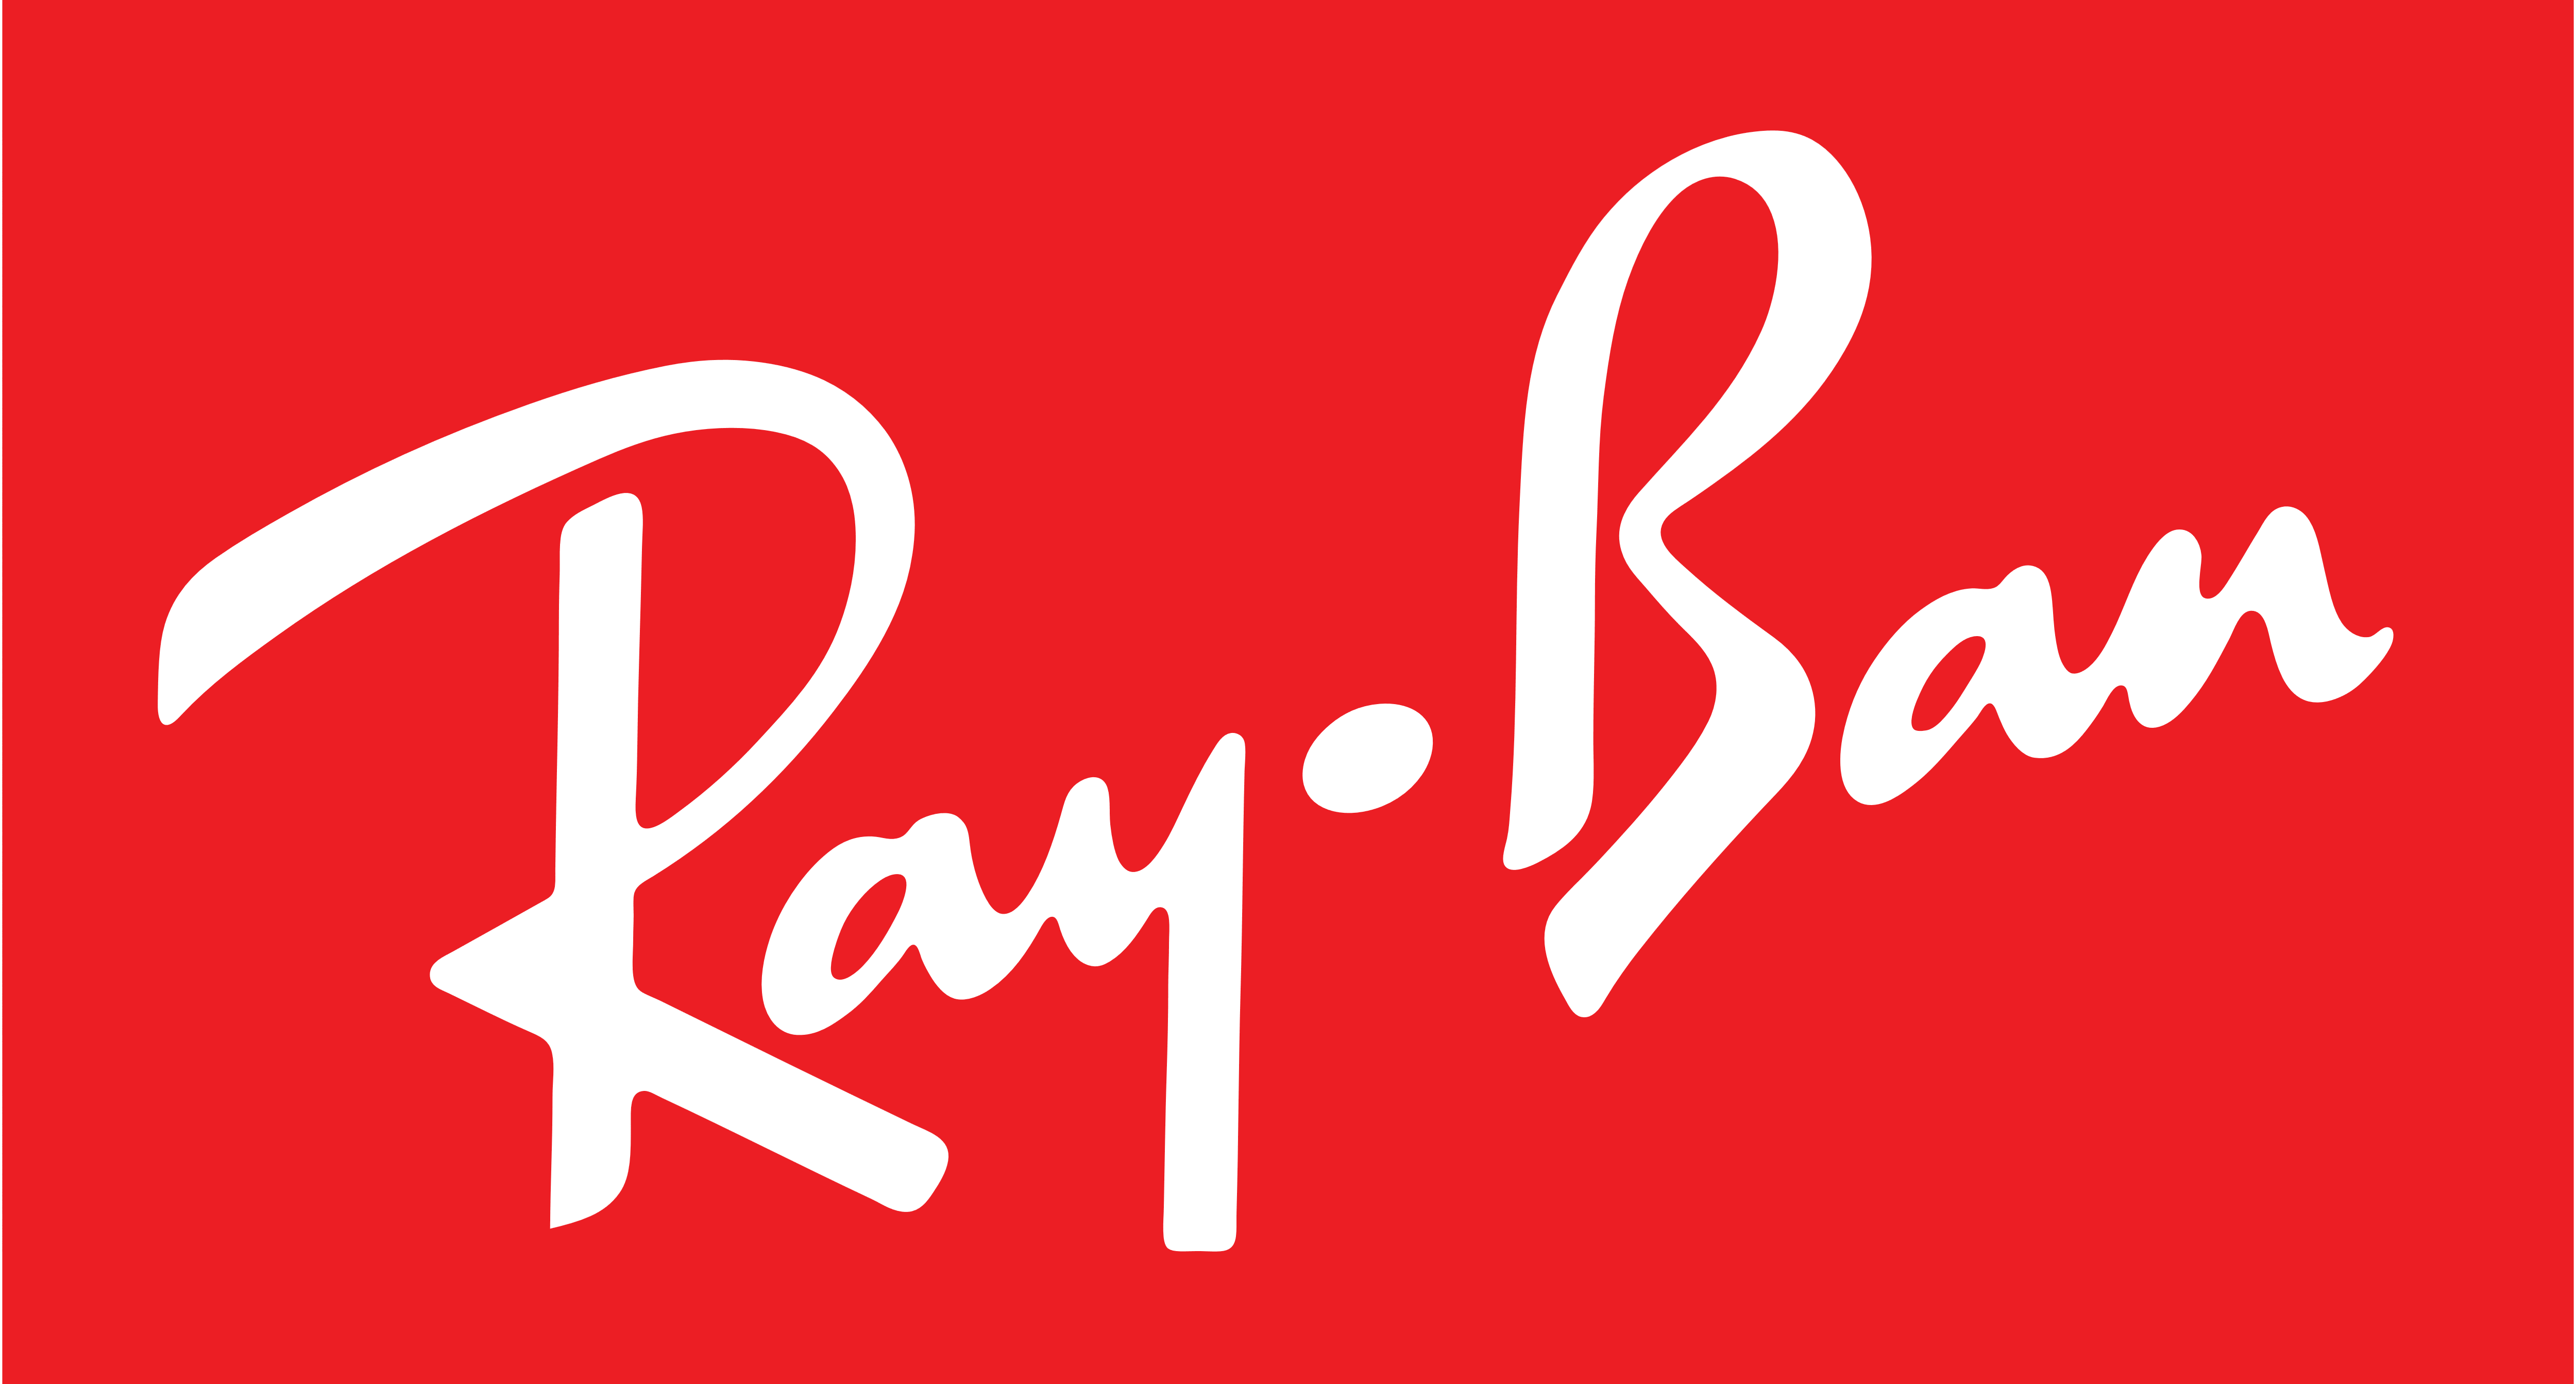 Ray-Ban – Logos Download